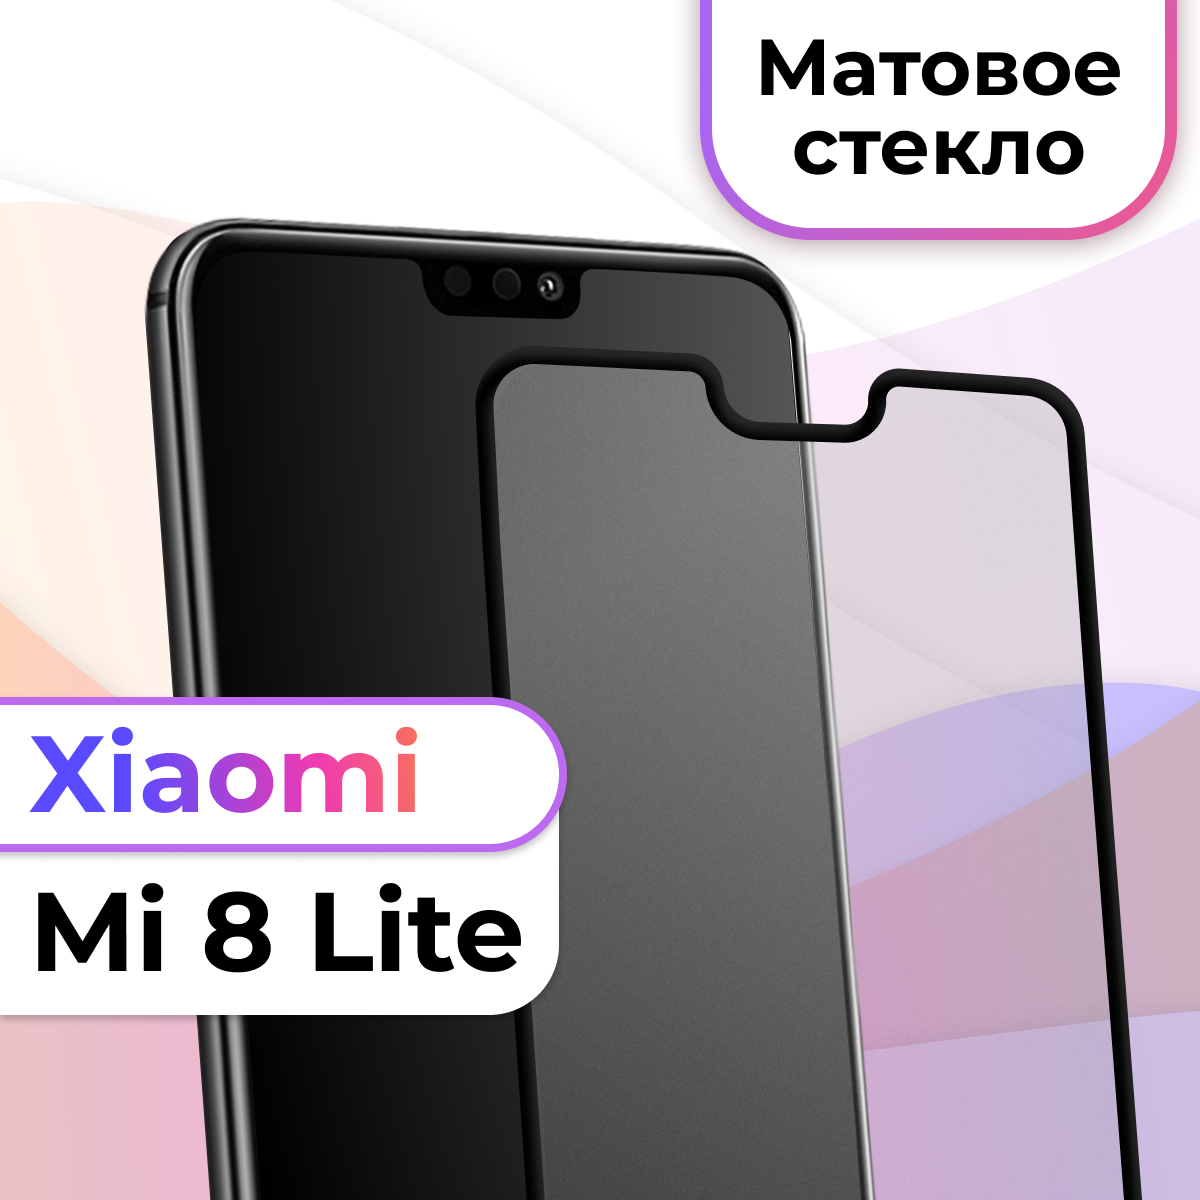 Матовое защитное стекло на телефон Xiaomi Mi 8 Lite / Противоударное стекло на весь экран для смартфона Сяоми Ми 8 Лайт / Бронестекло для телефона